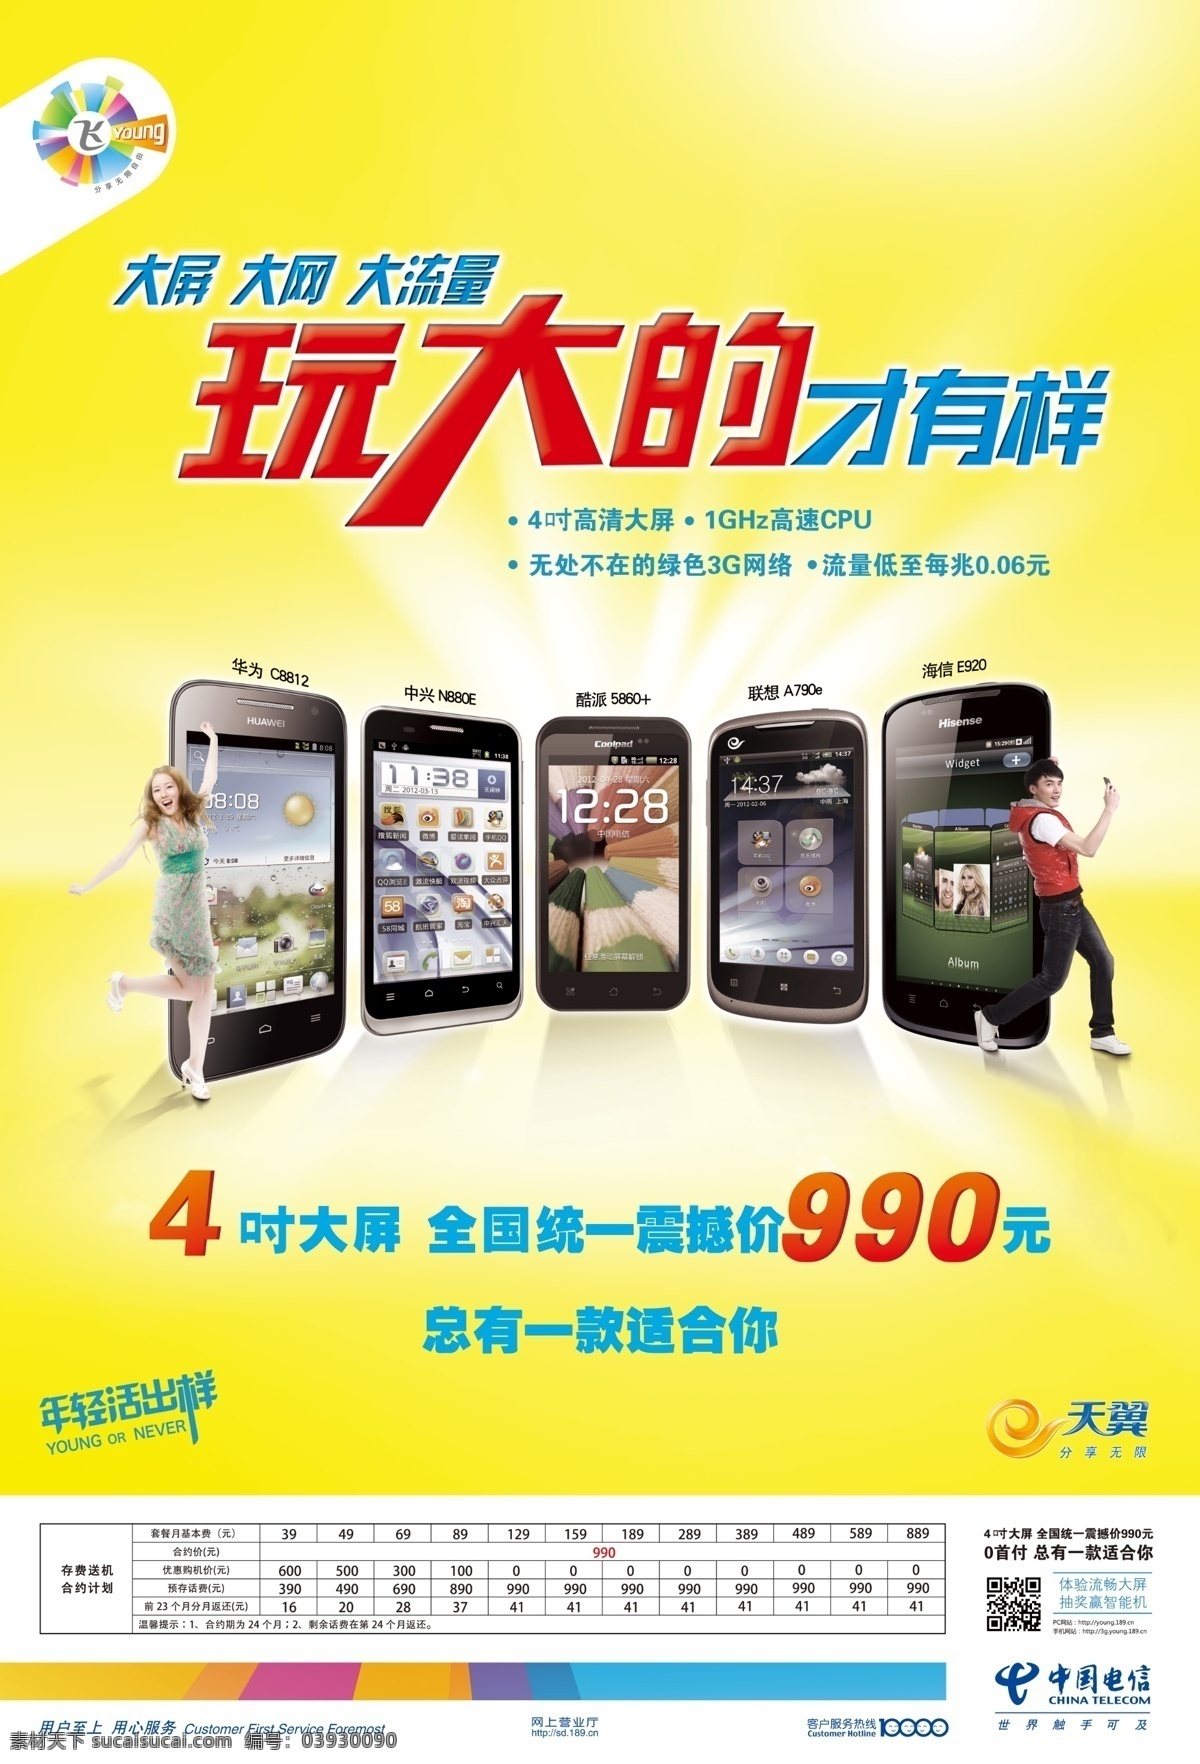 中国电信 广告设计模板 源文件 4吋大屏手机 玩大的才有样 其他海报设计